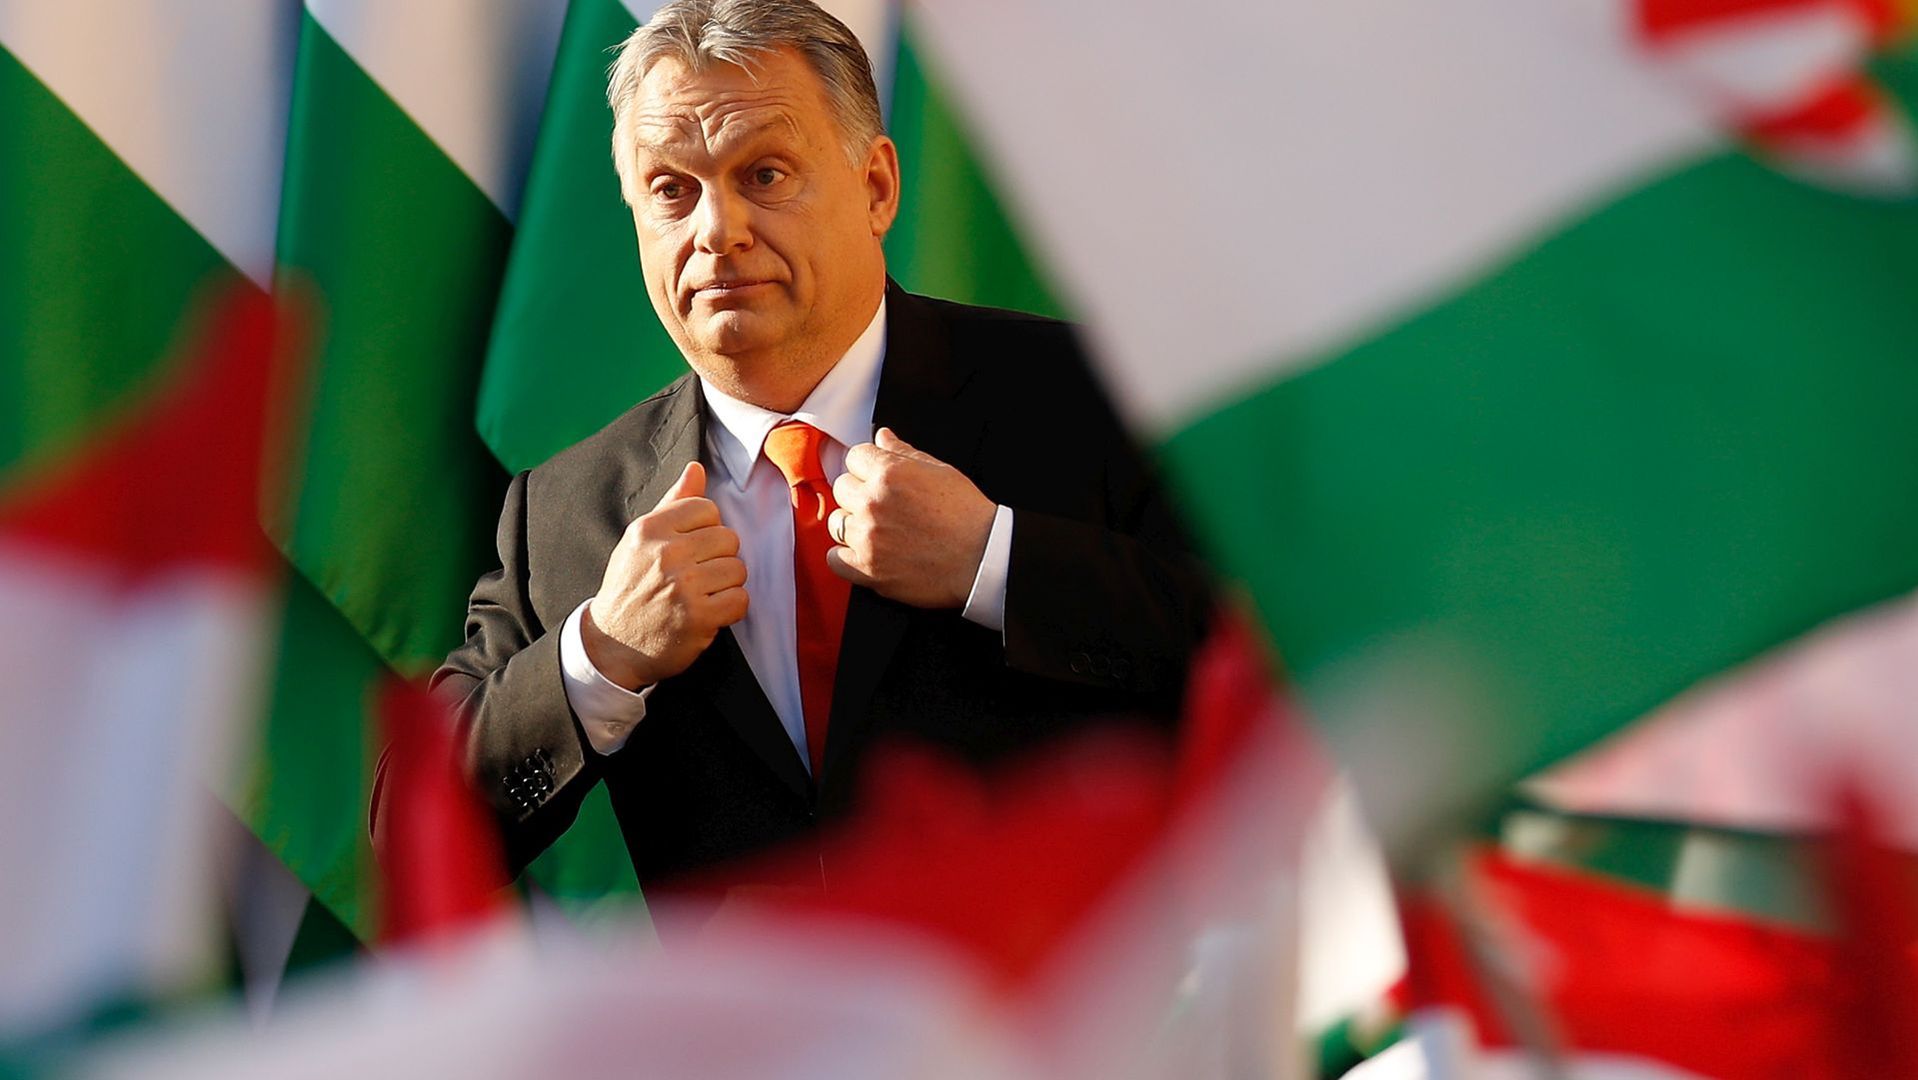 Victor Orbán rządzi Węgrami od 2010 roku